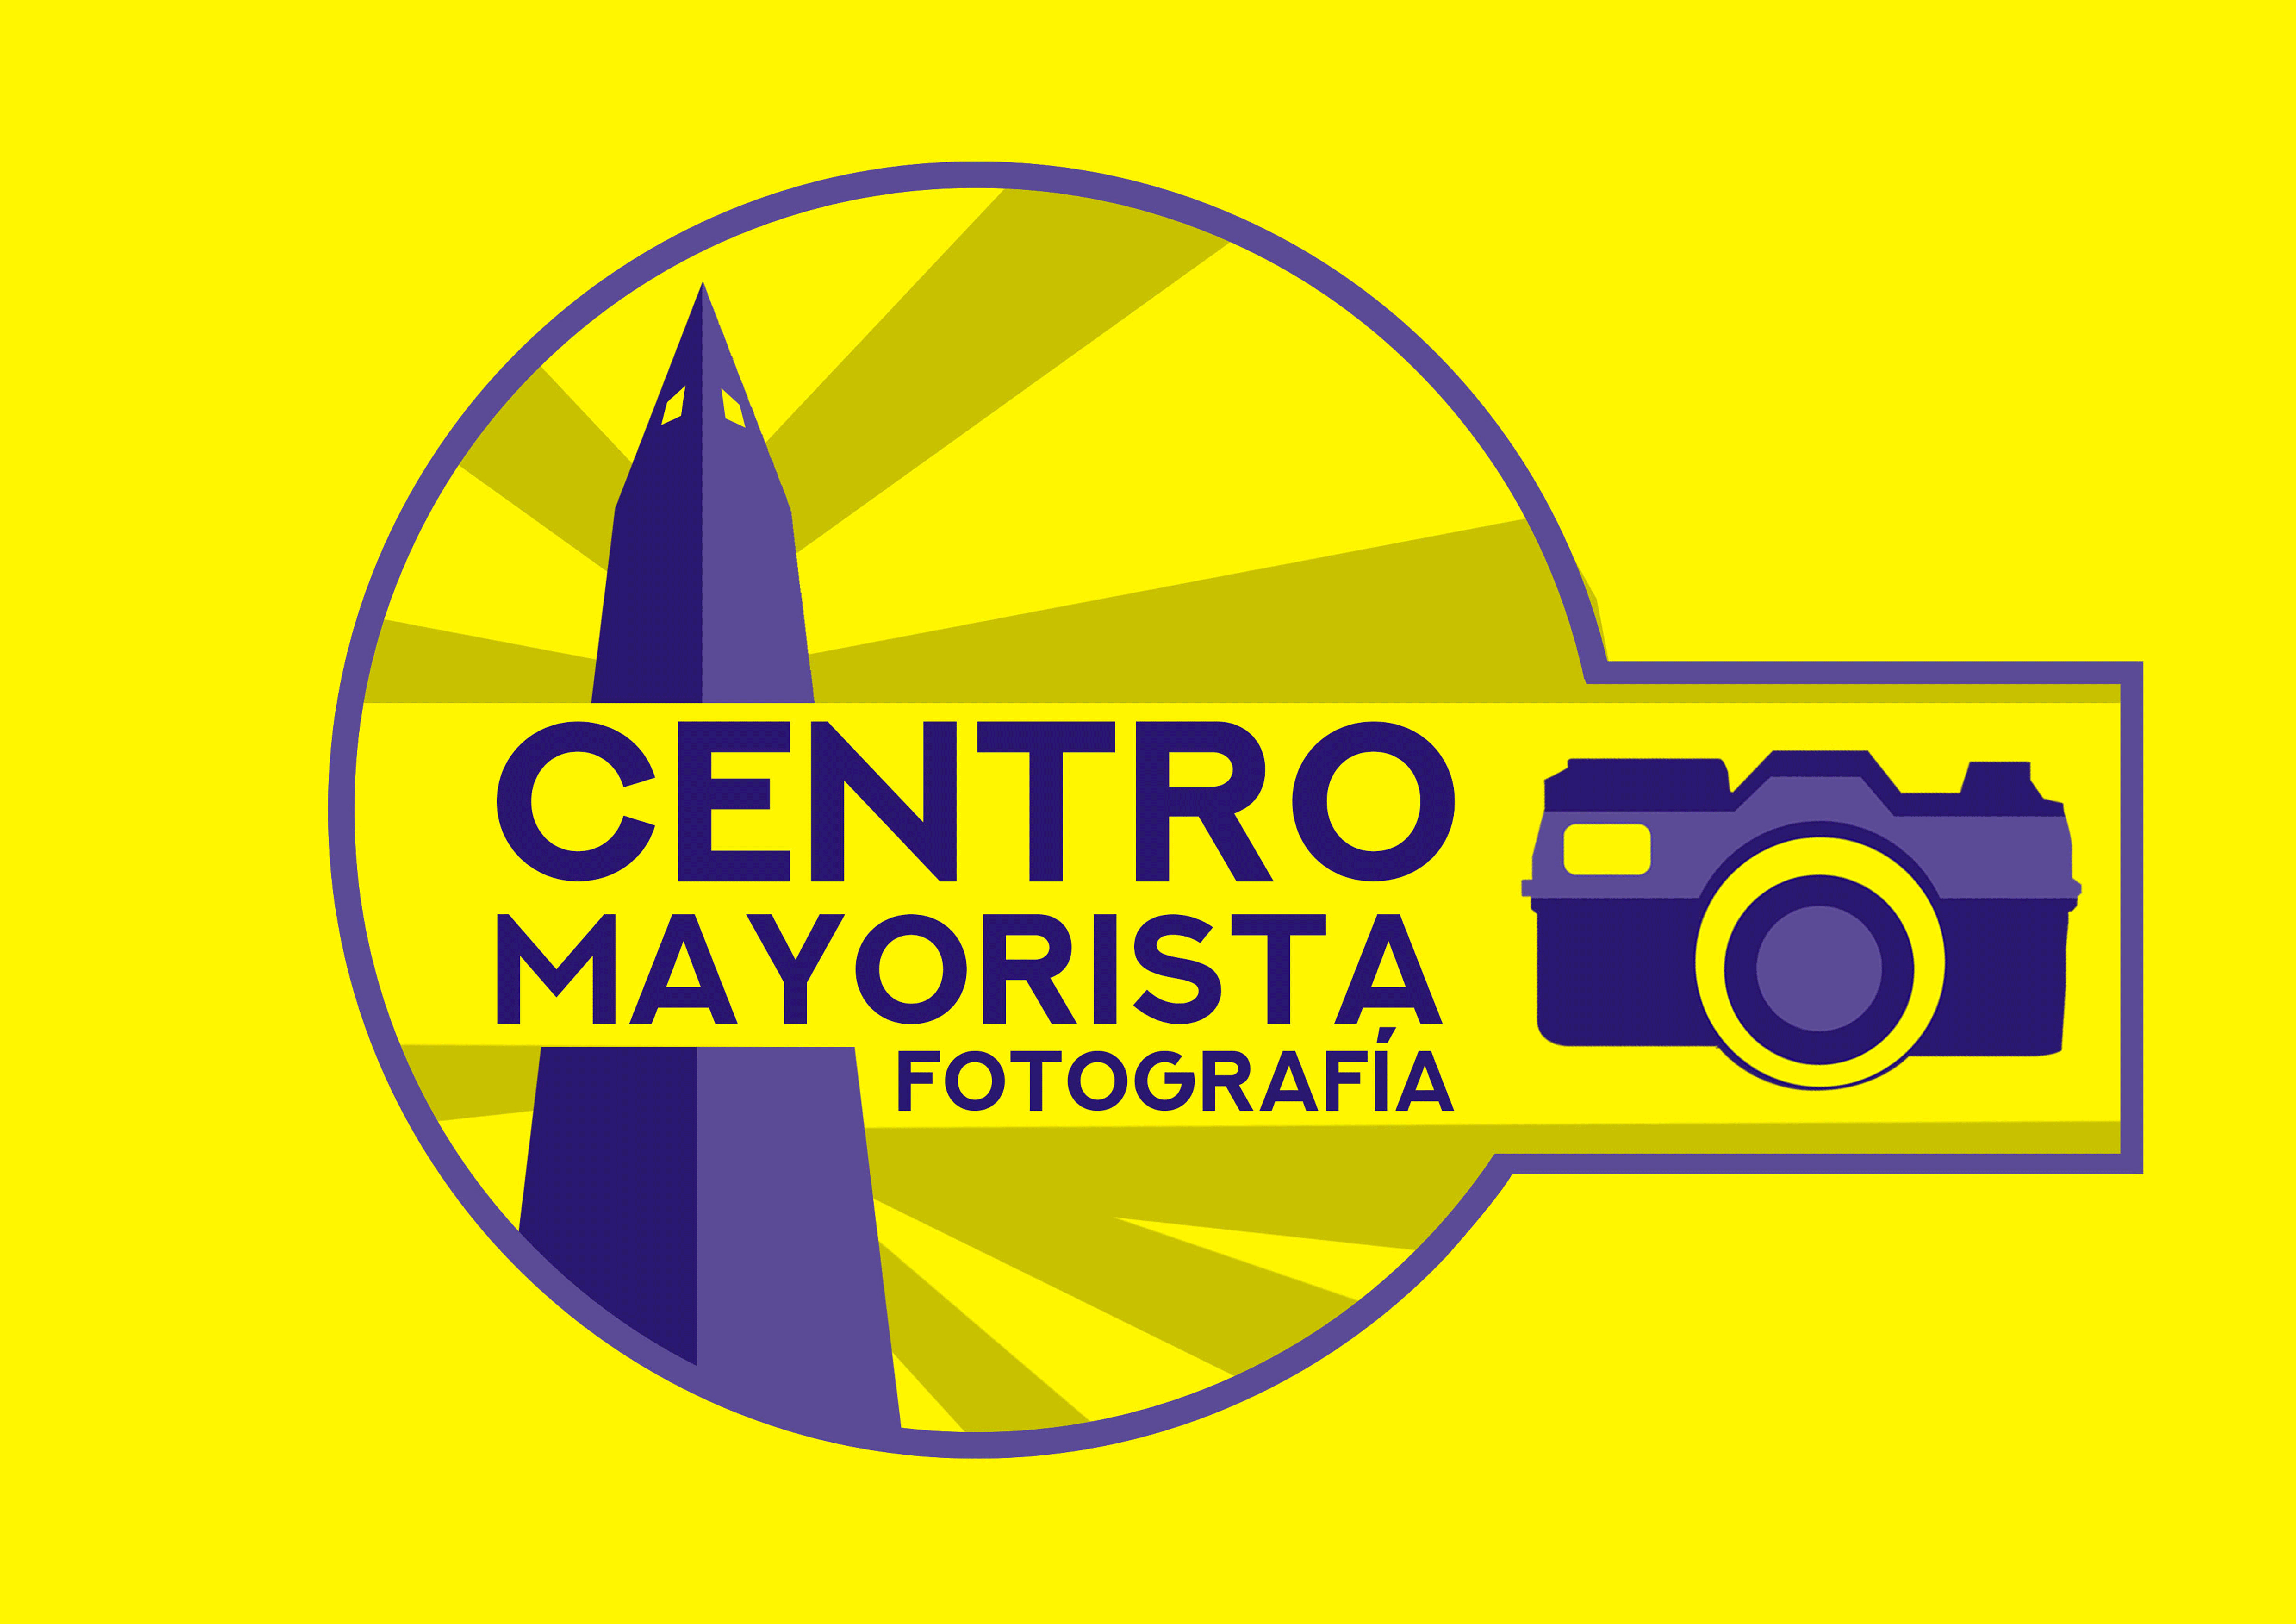 Centro Mayorista de fotografía